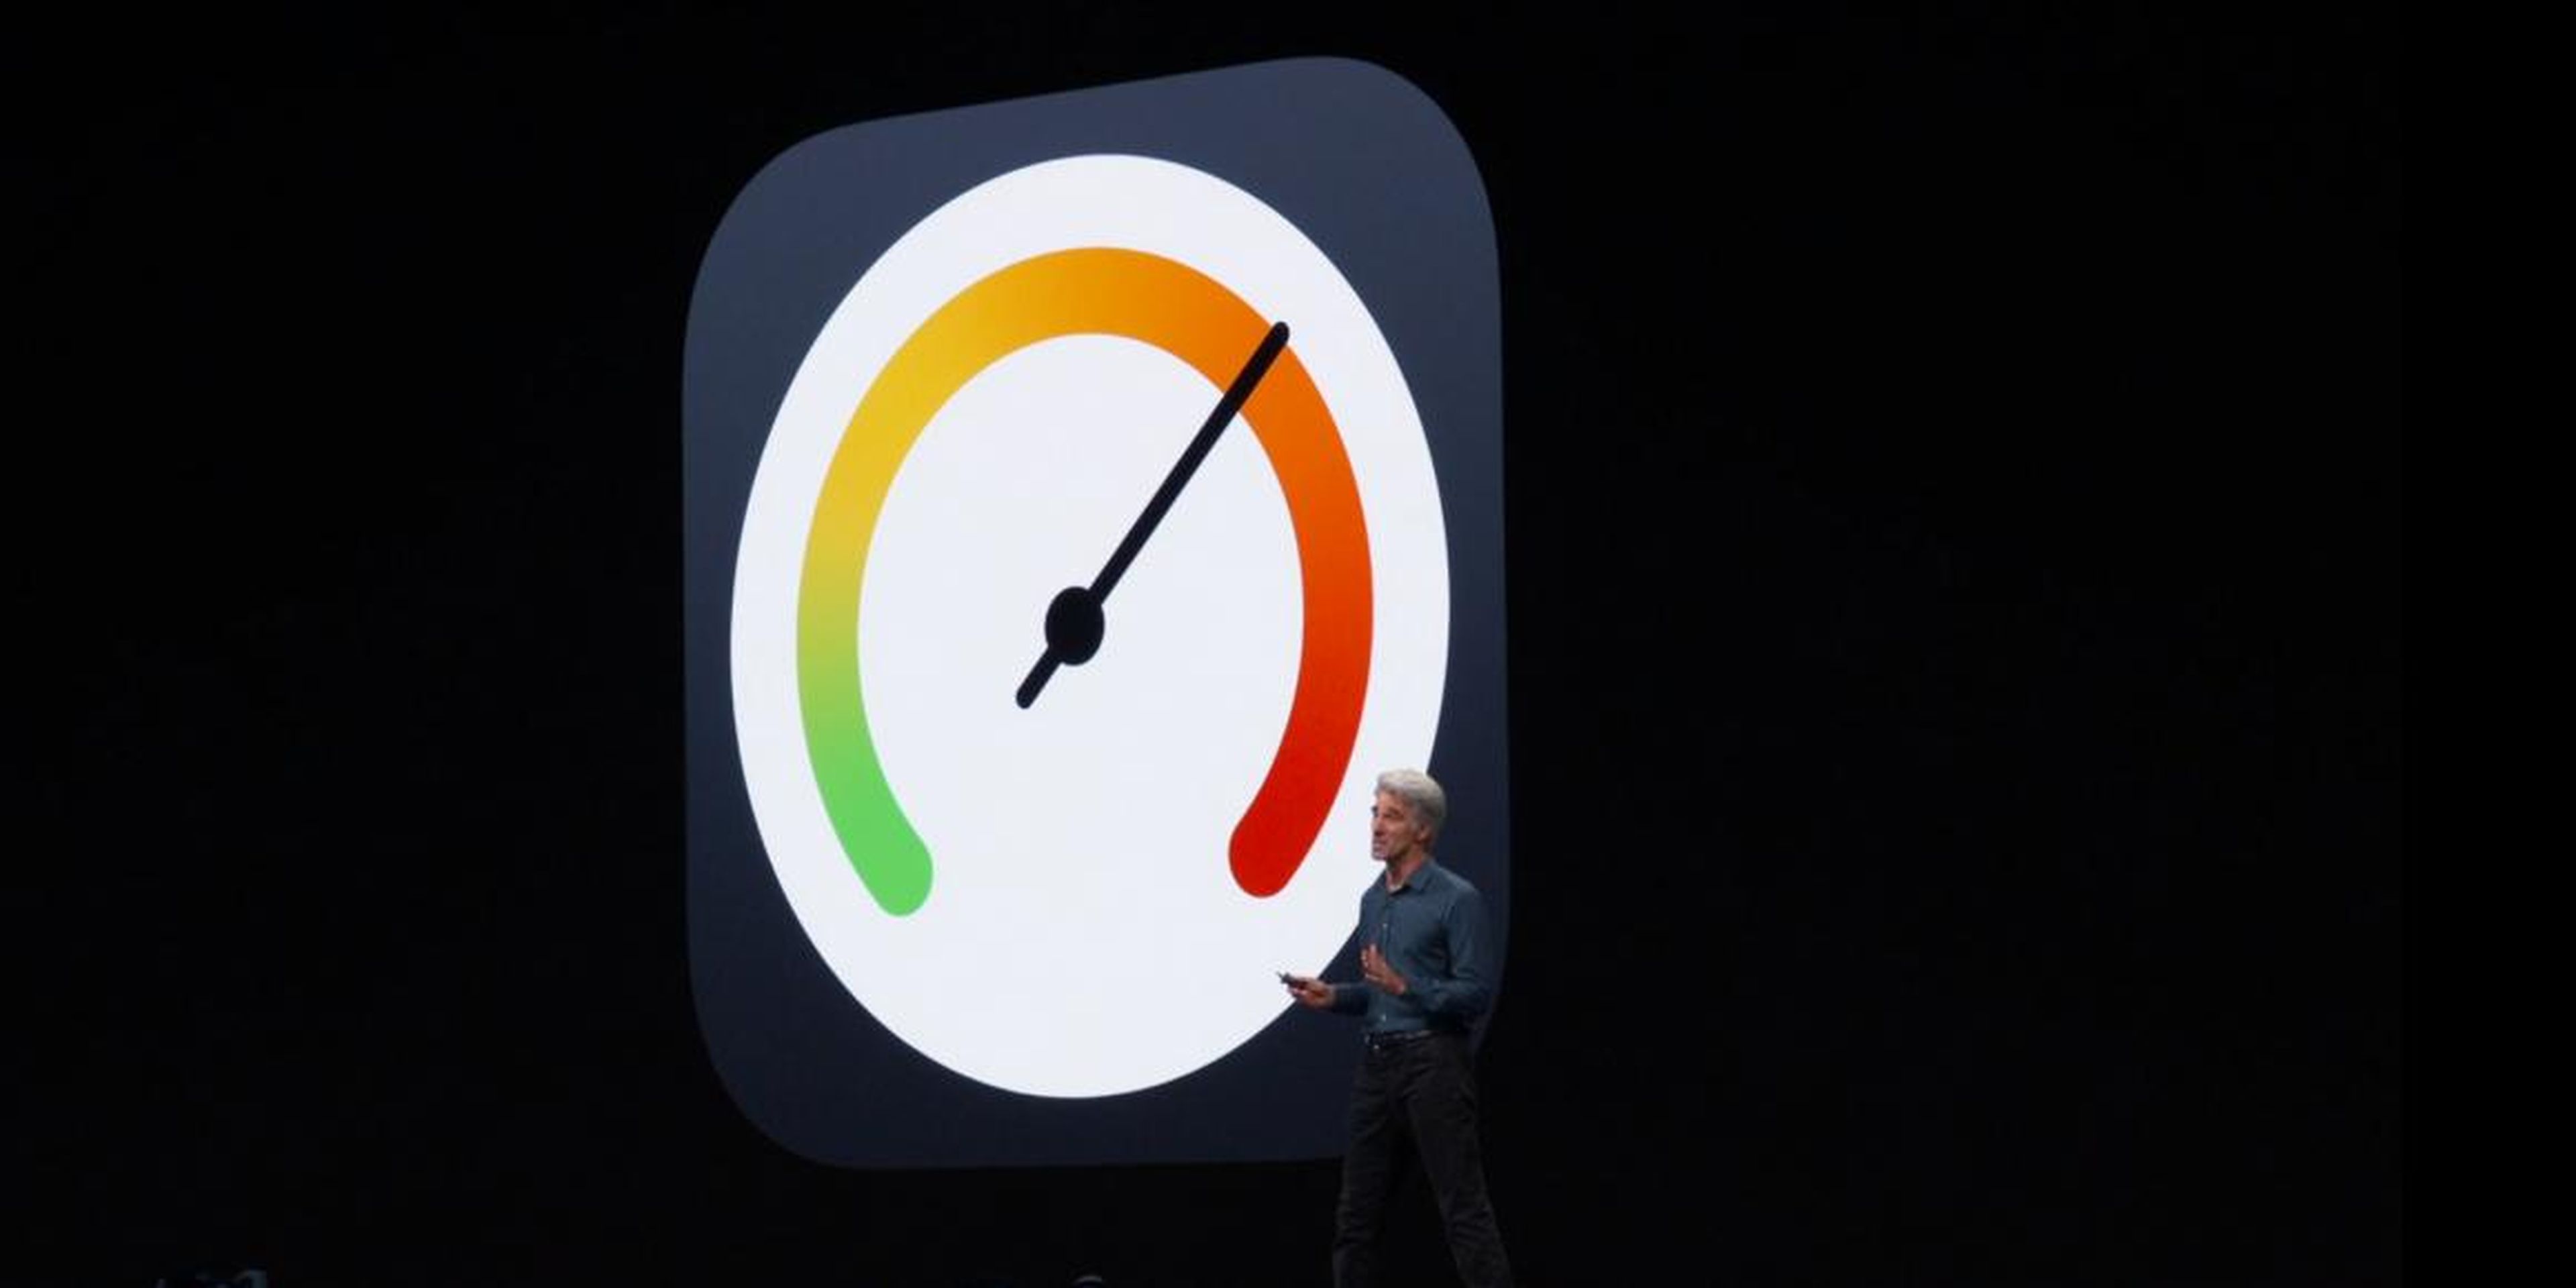 iOS 13 promete ser más rápido y eficaz, además de que aumenta la velocidad de reconocimiento facial